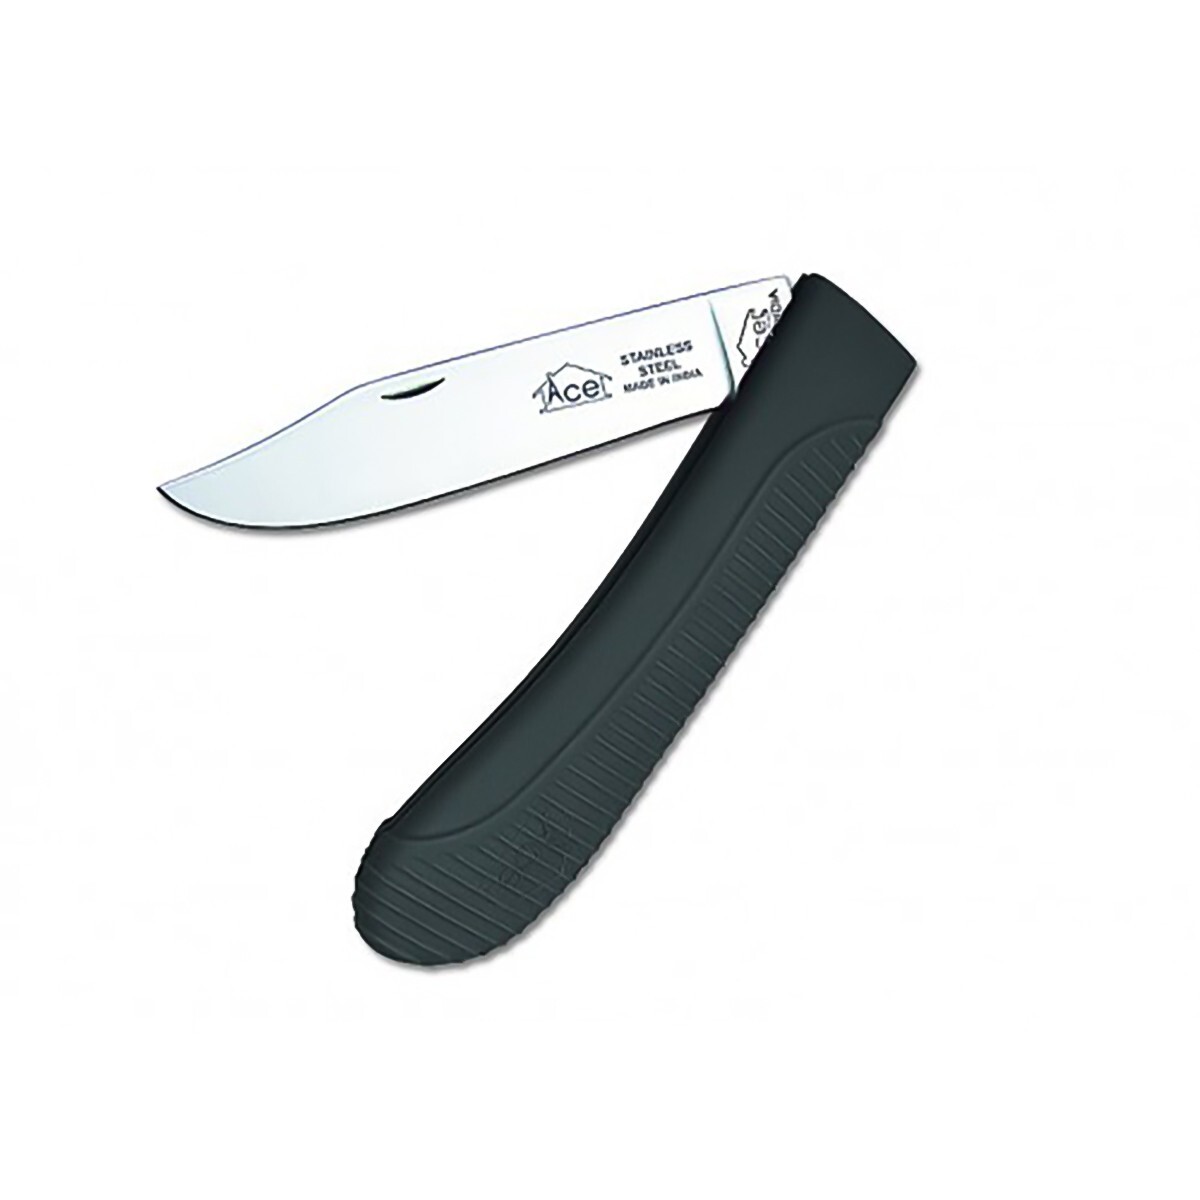 Ace Knife Companion 205mm